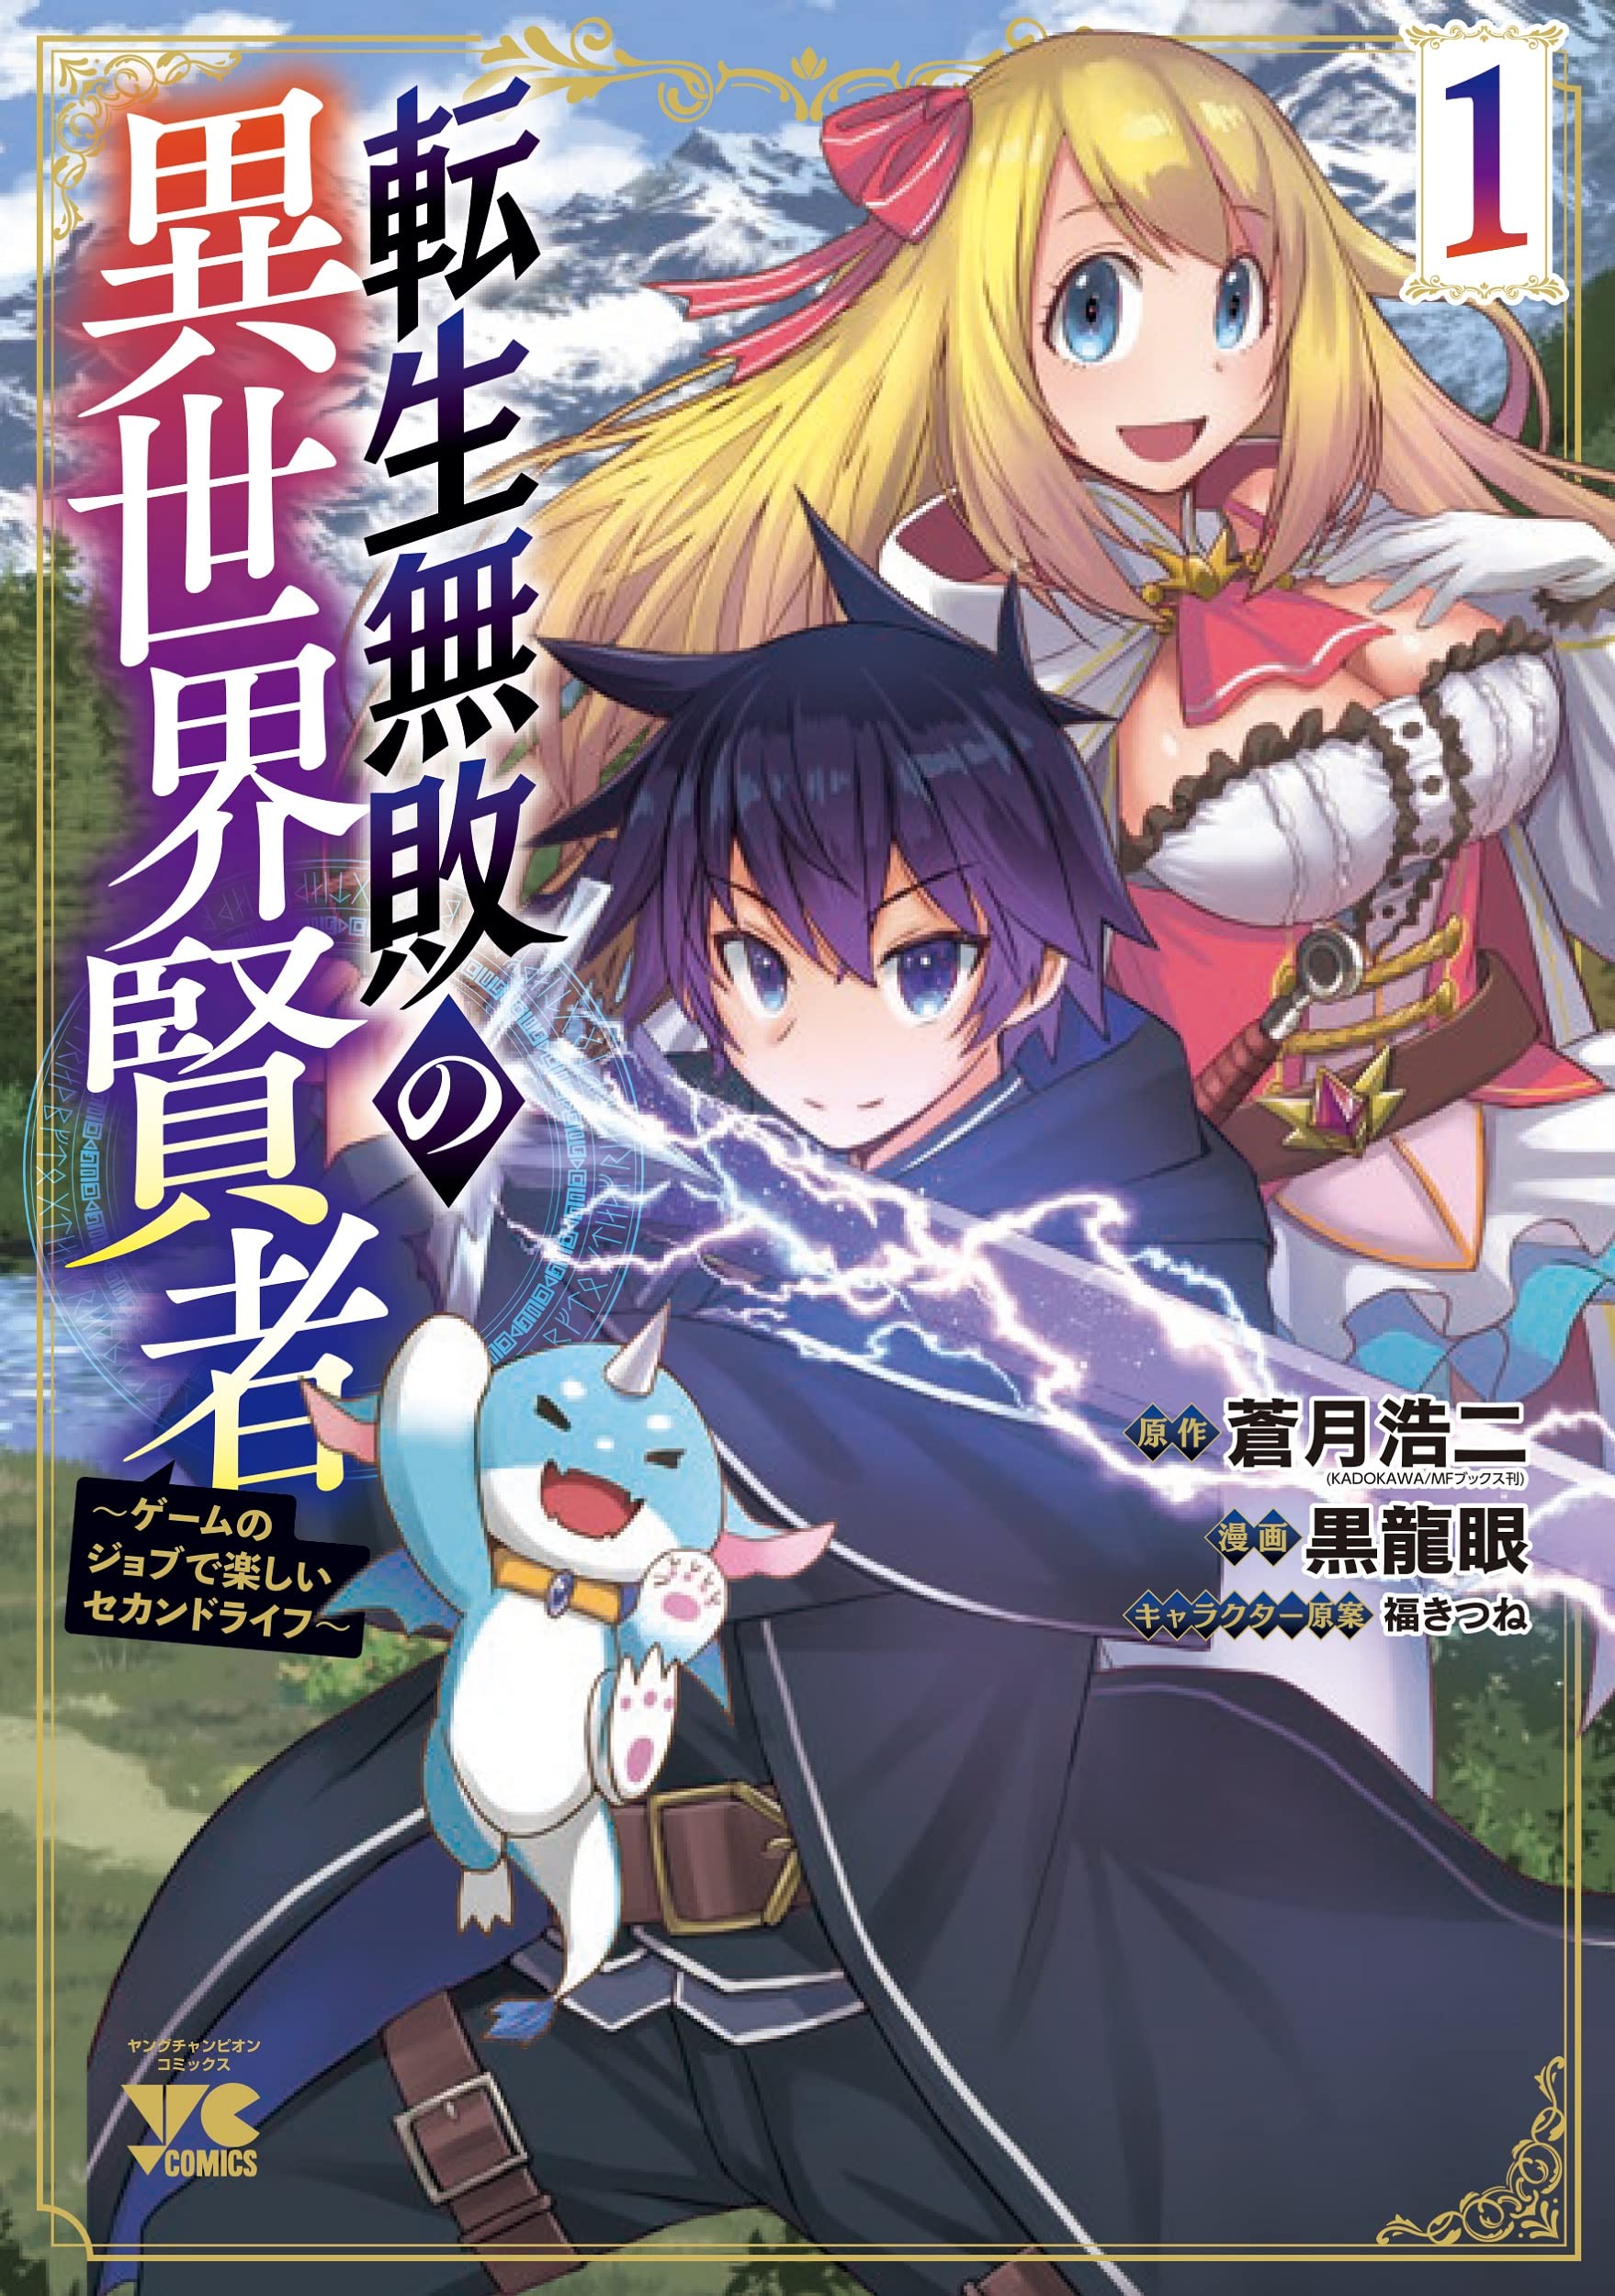 Tensei Kenja no Isekai Life Light Novels Get TV Anime - News